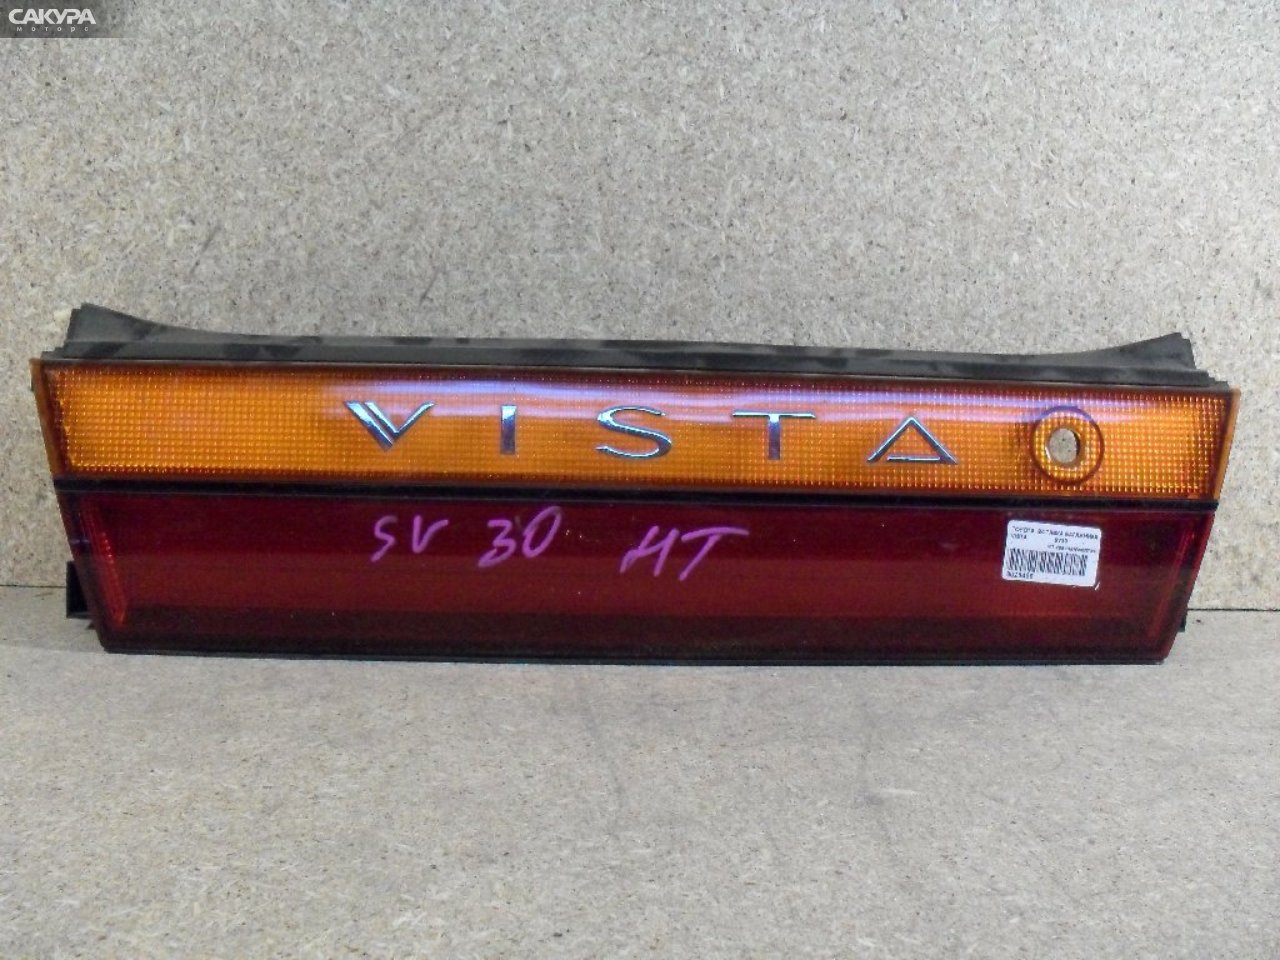 Фонарь вставка багажника Toyota Vista SV30: купить в Сакура Абакан.